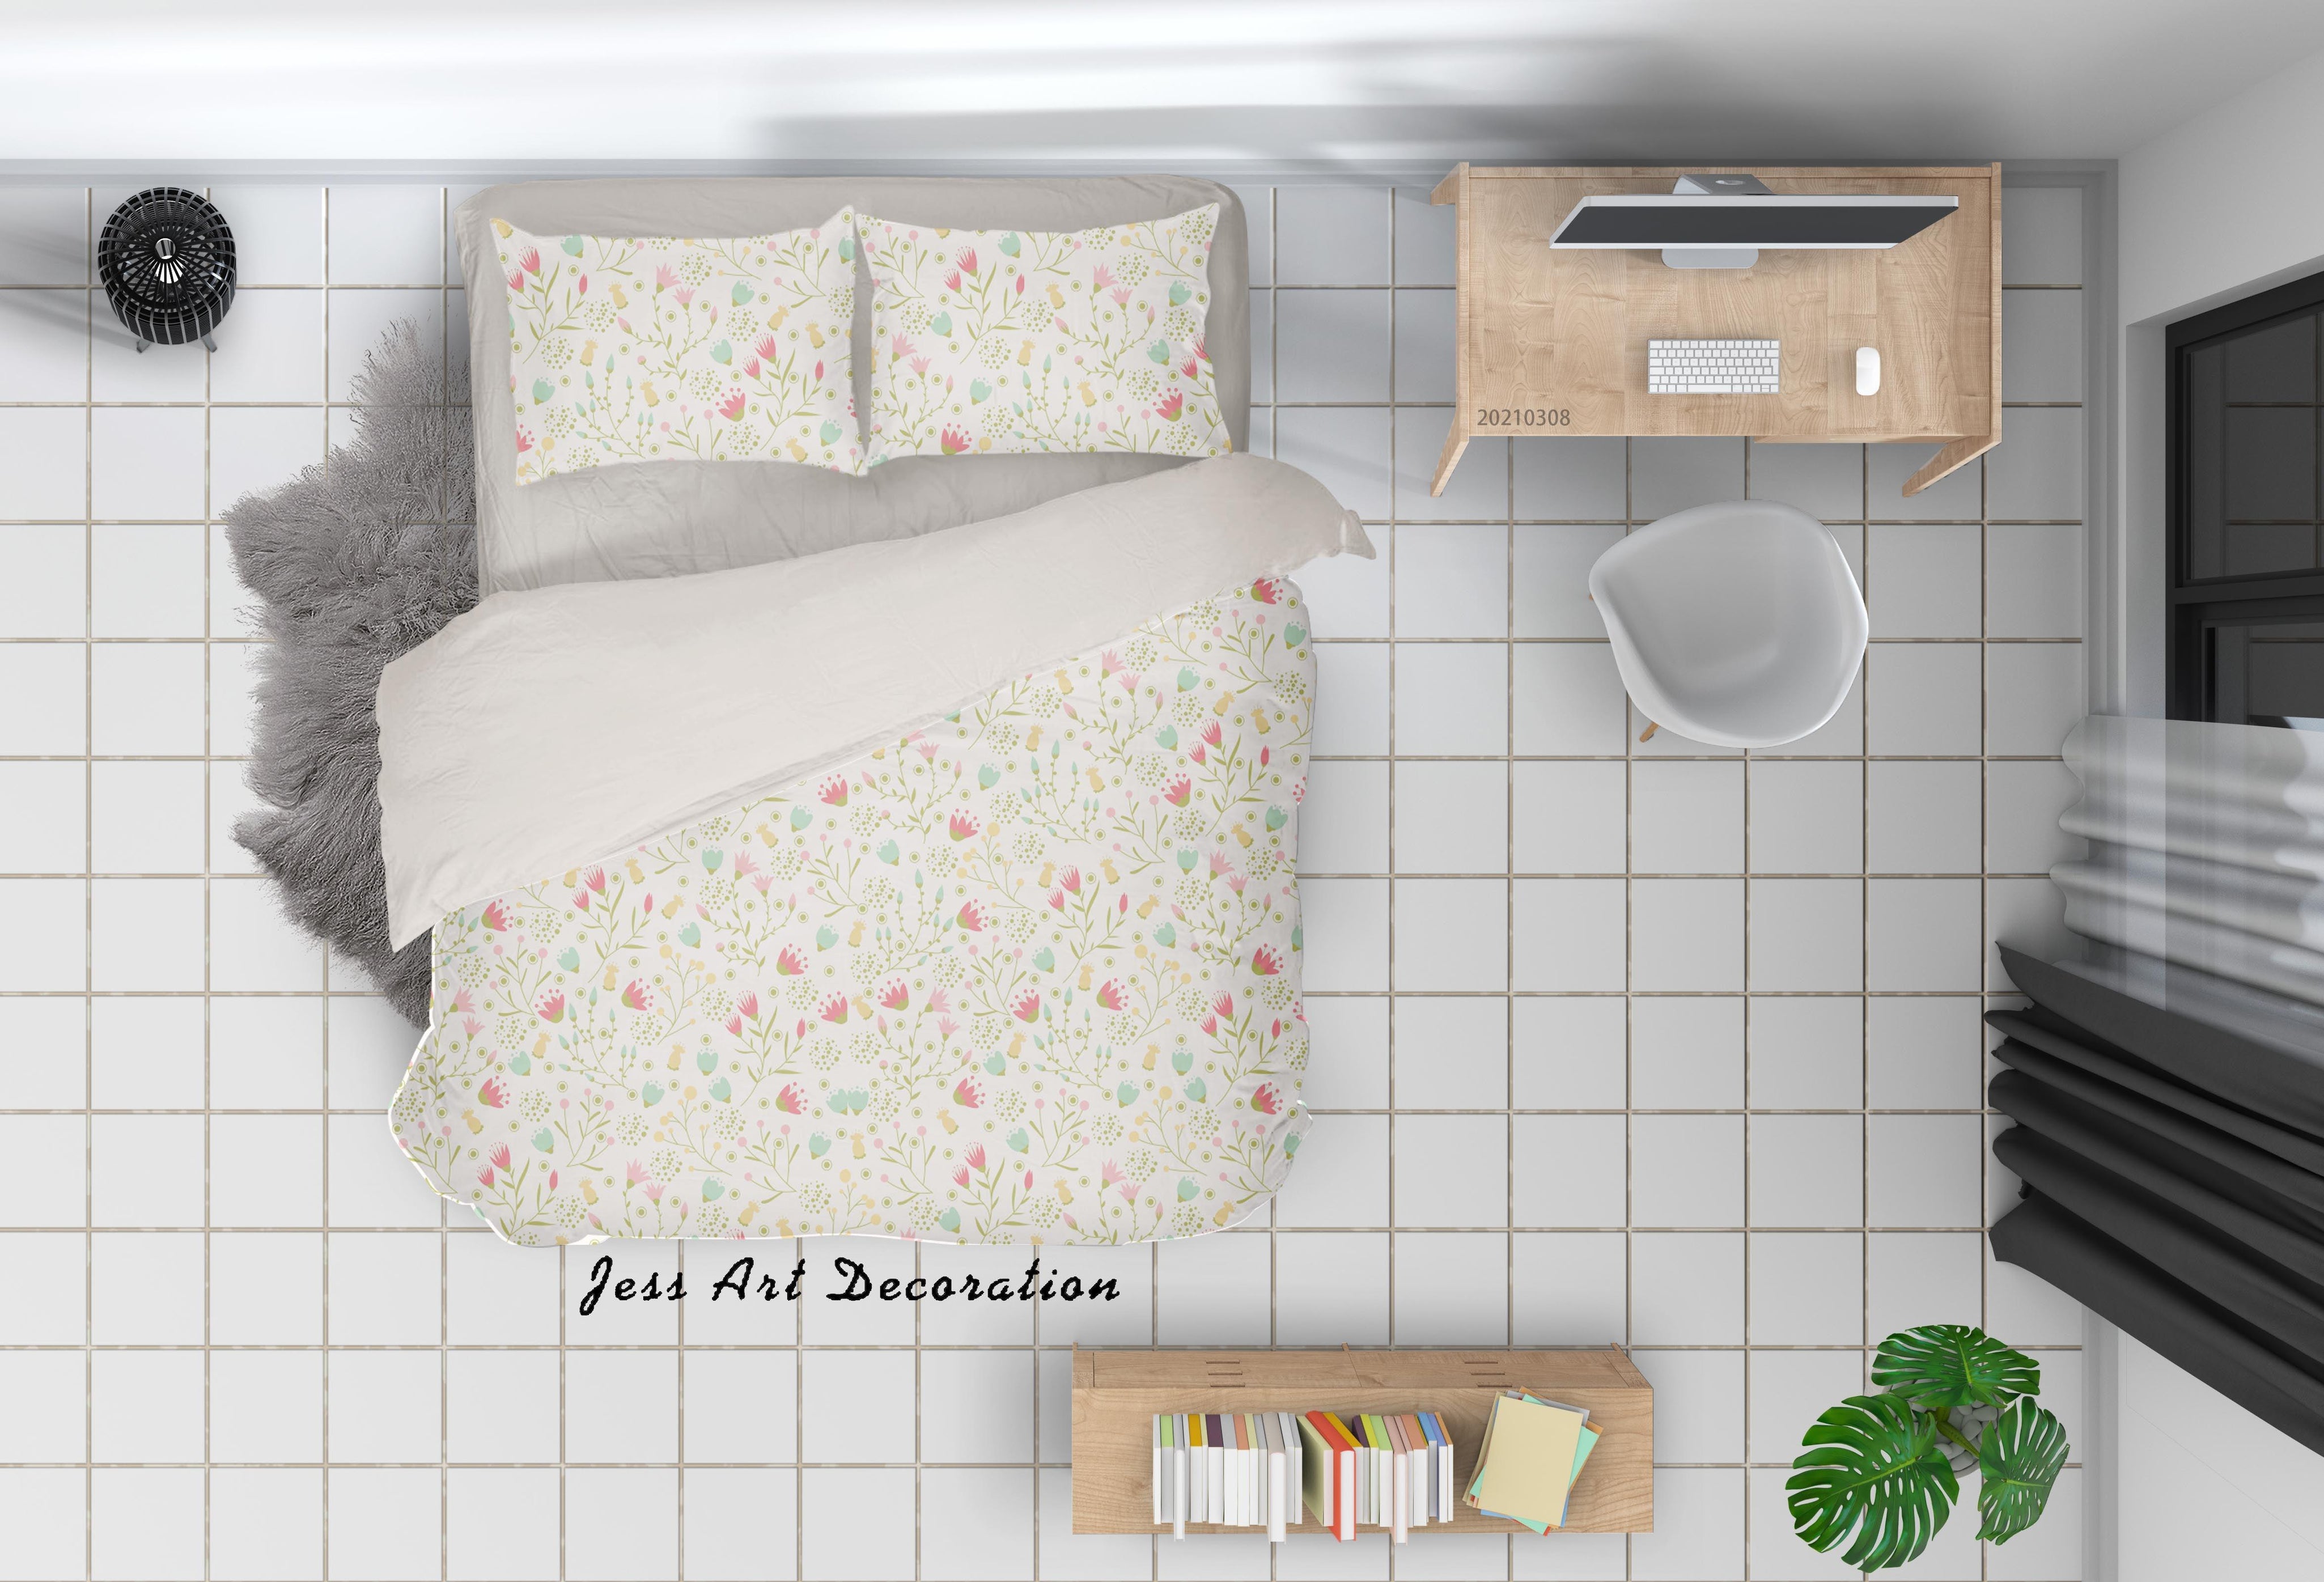 3D Watercolor Color Floral Quilt Cover Set Bedding Set Duvet Cover Pillowcases 18- Jess Art Decoration